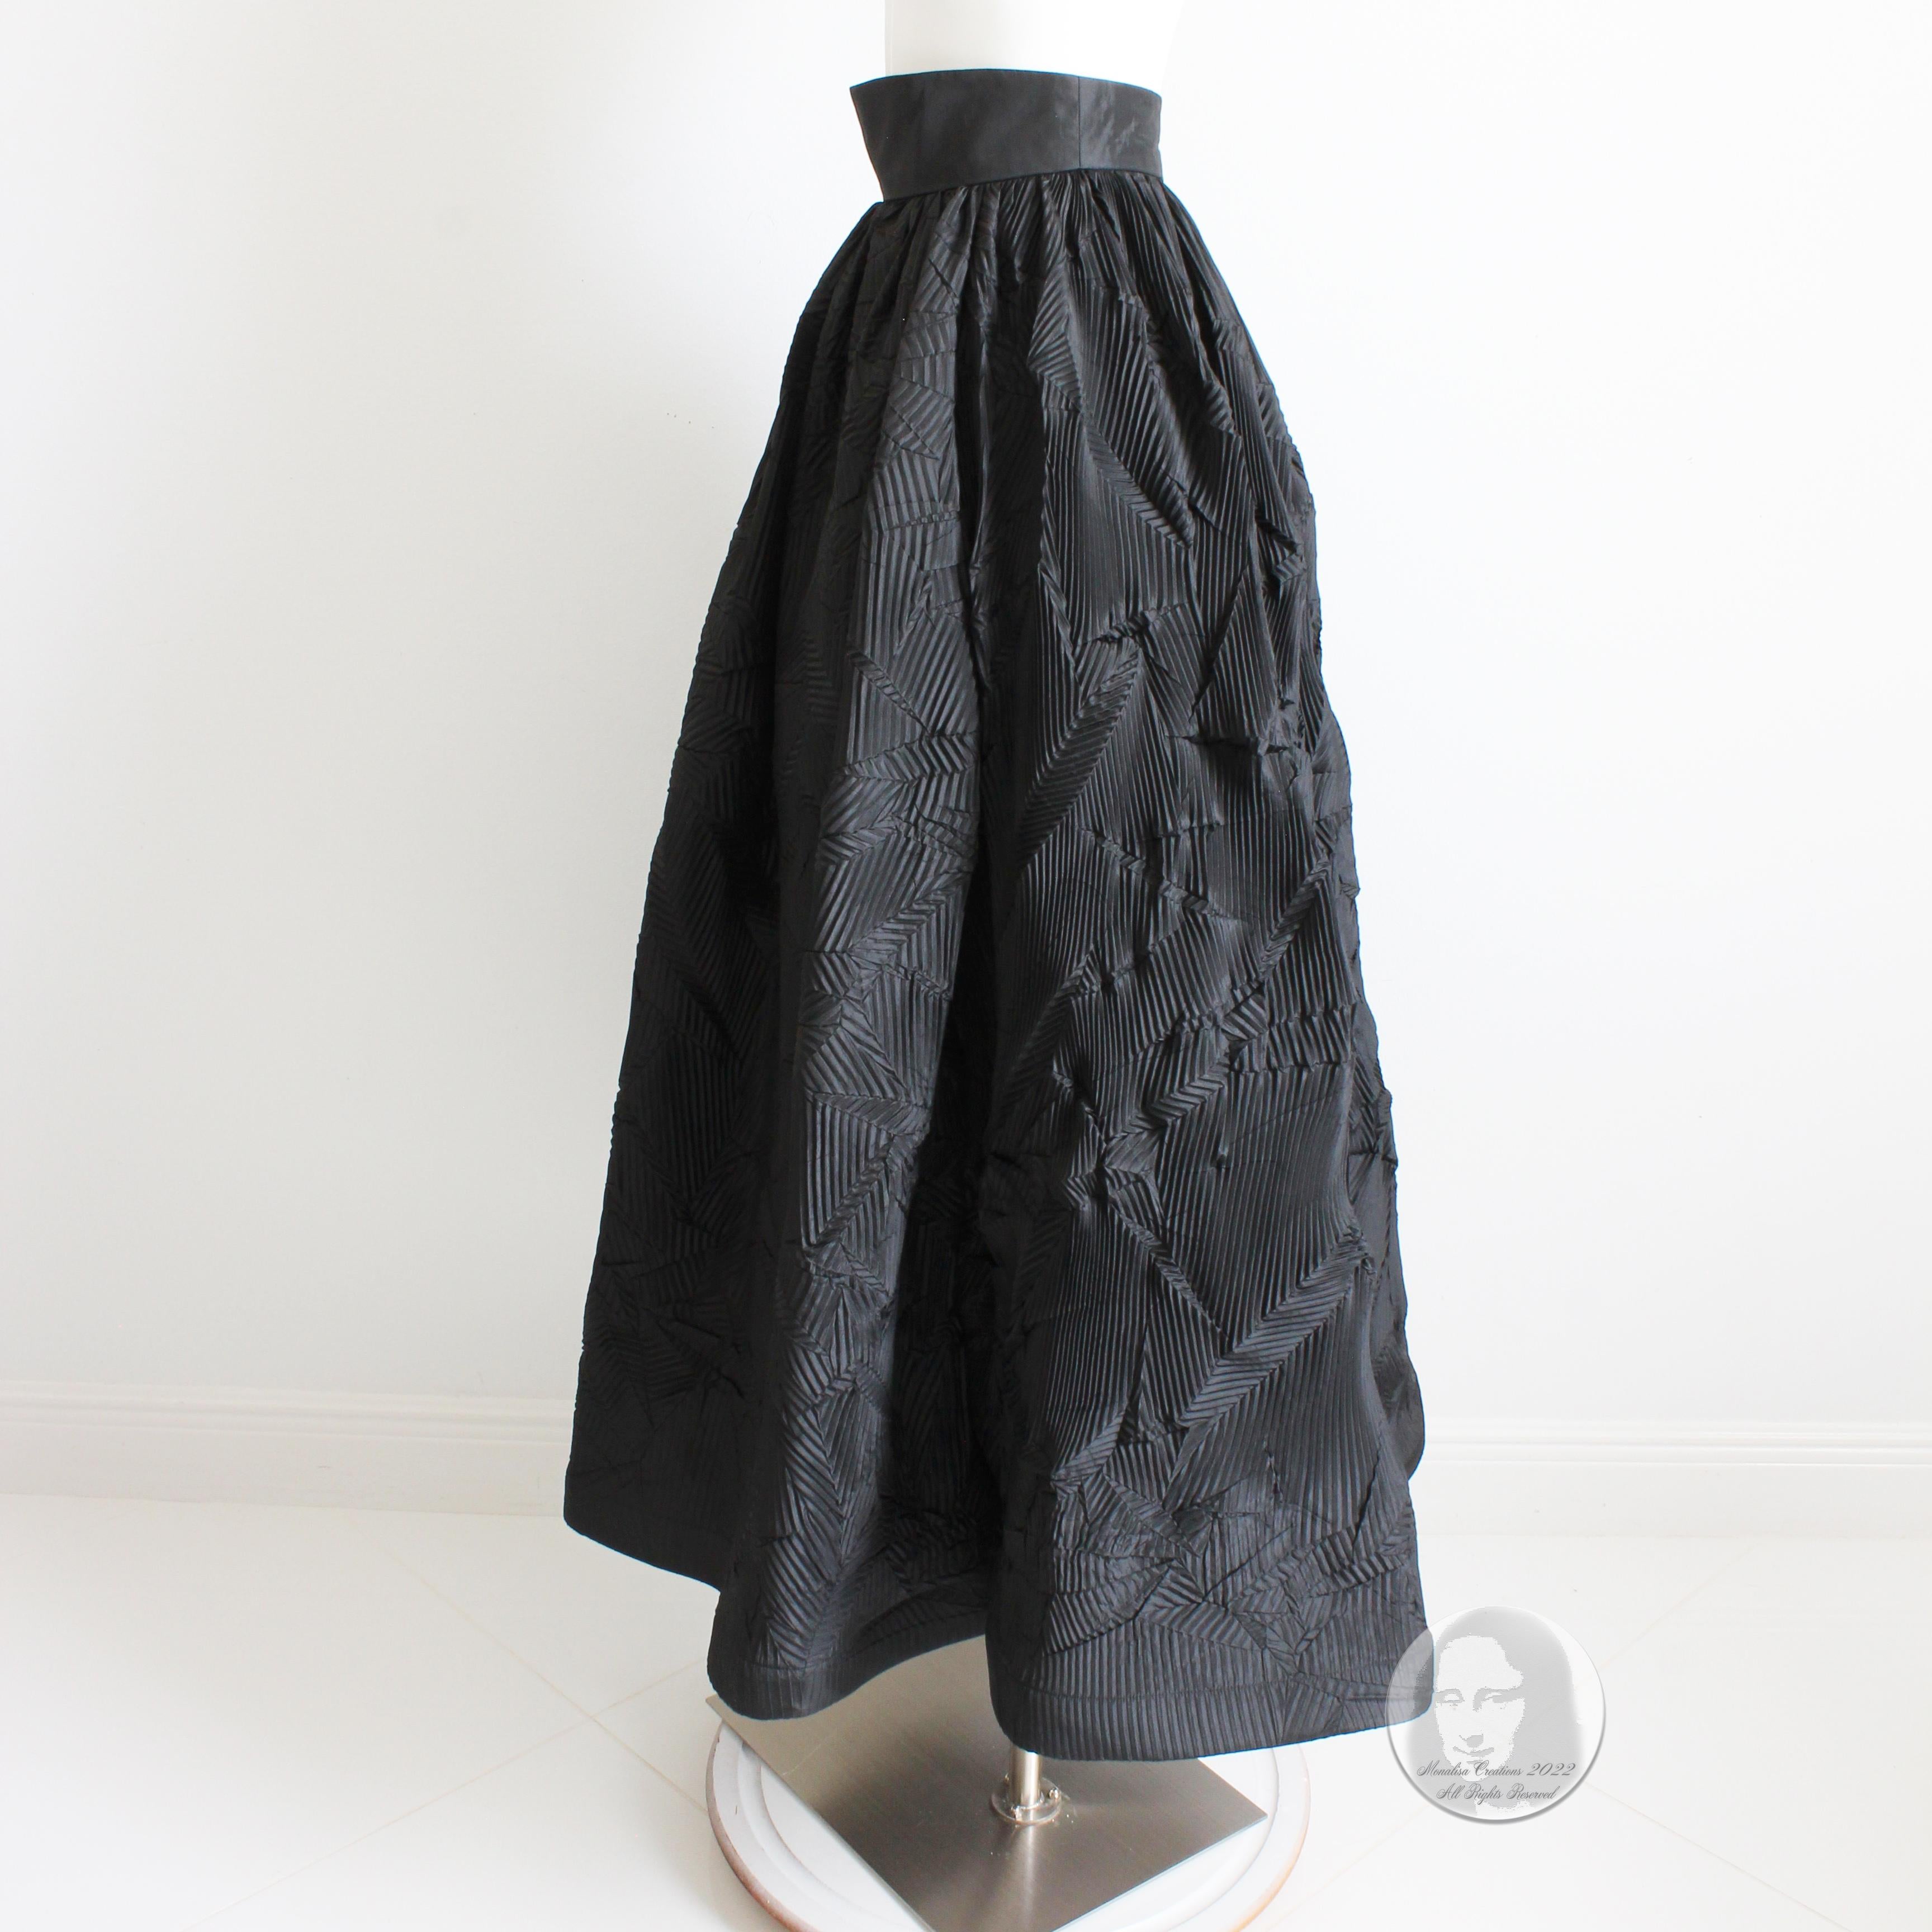 Sully Bonnelly Black Pleated Avant Garde Formal Skirt Full Length Size 8 1